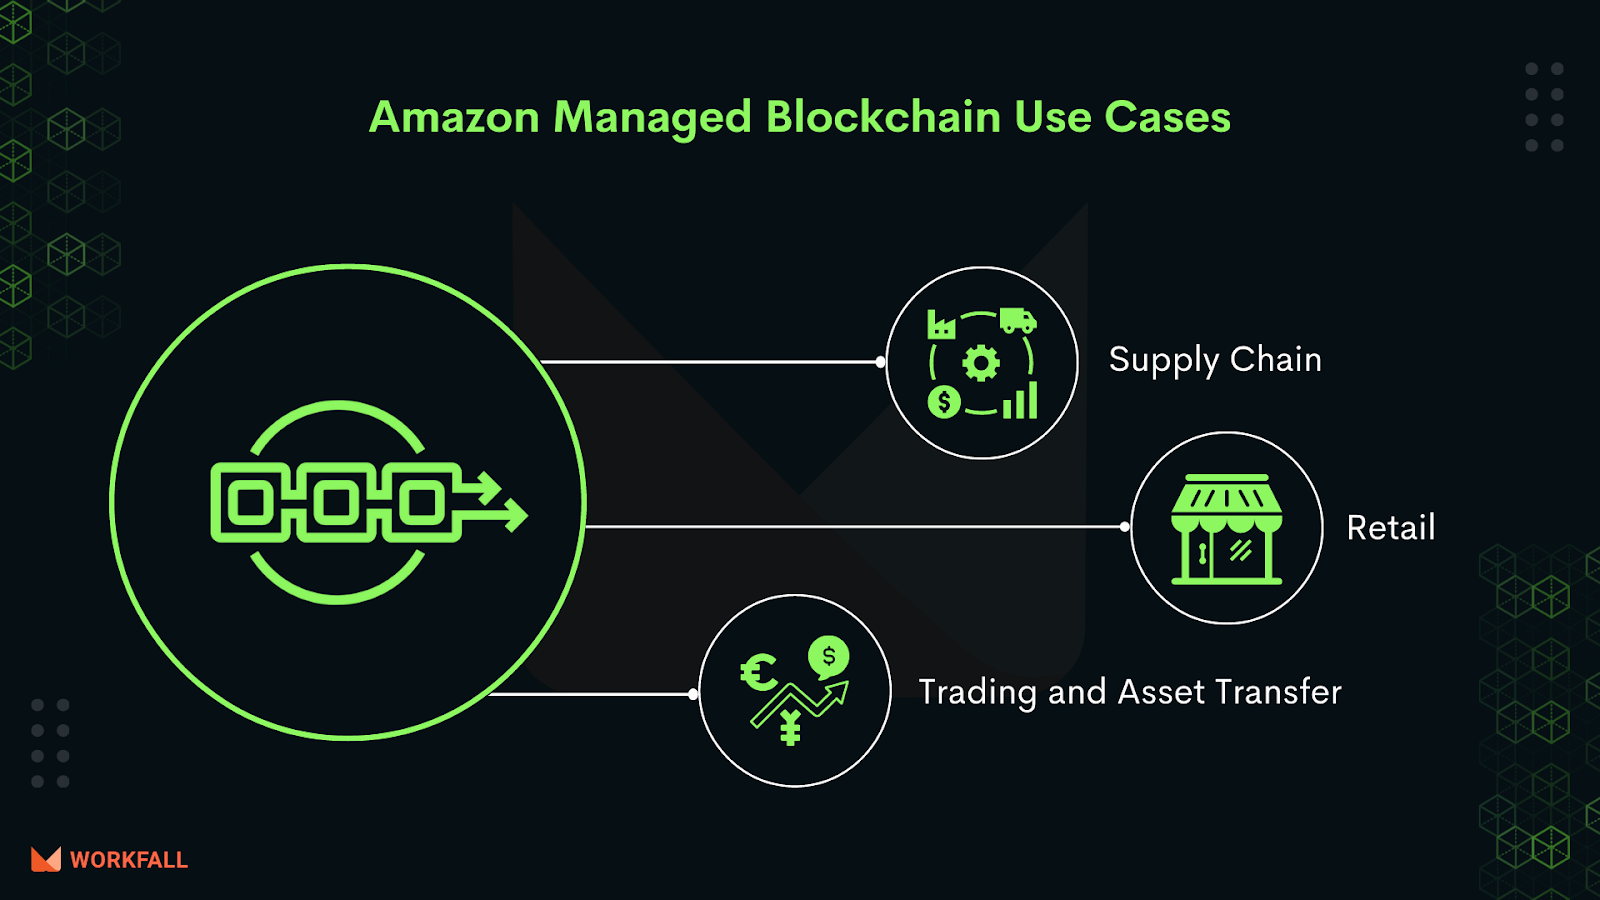 Use cases of Amazon Managed Blockchain